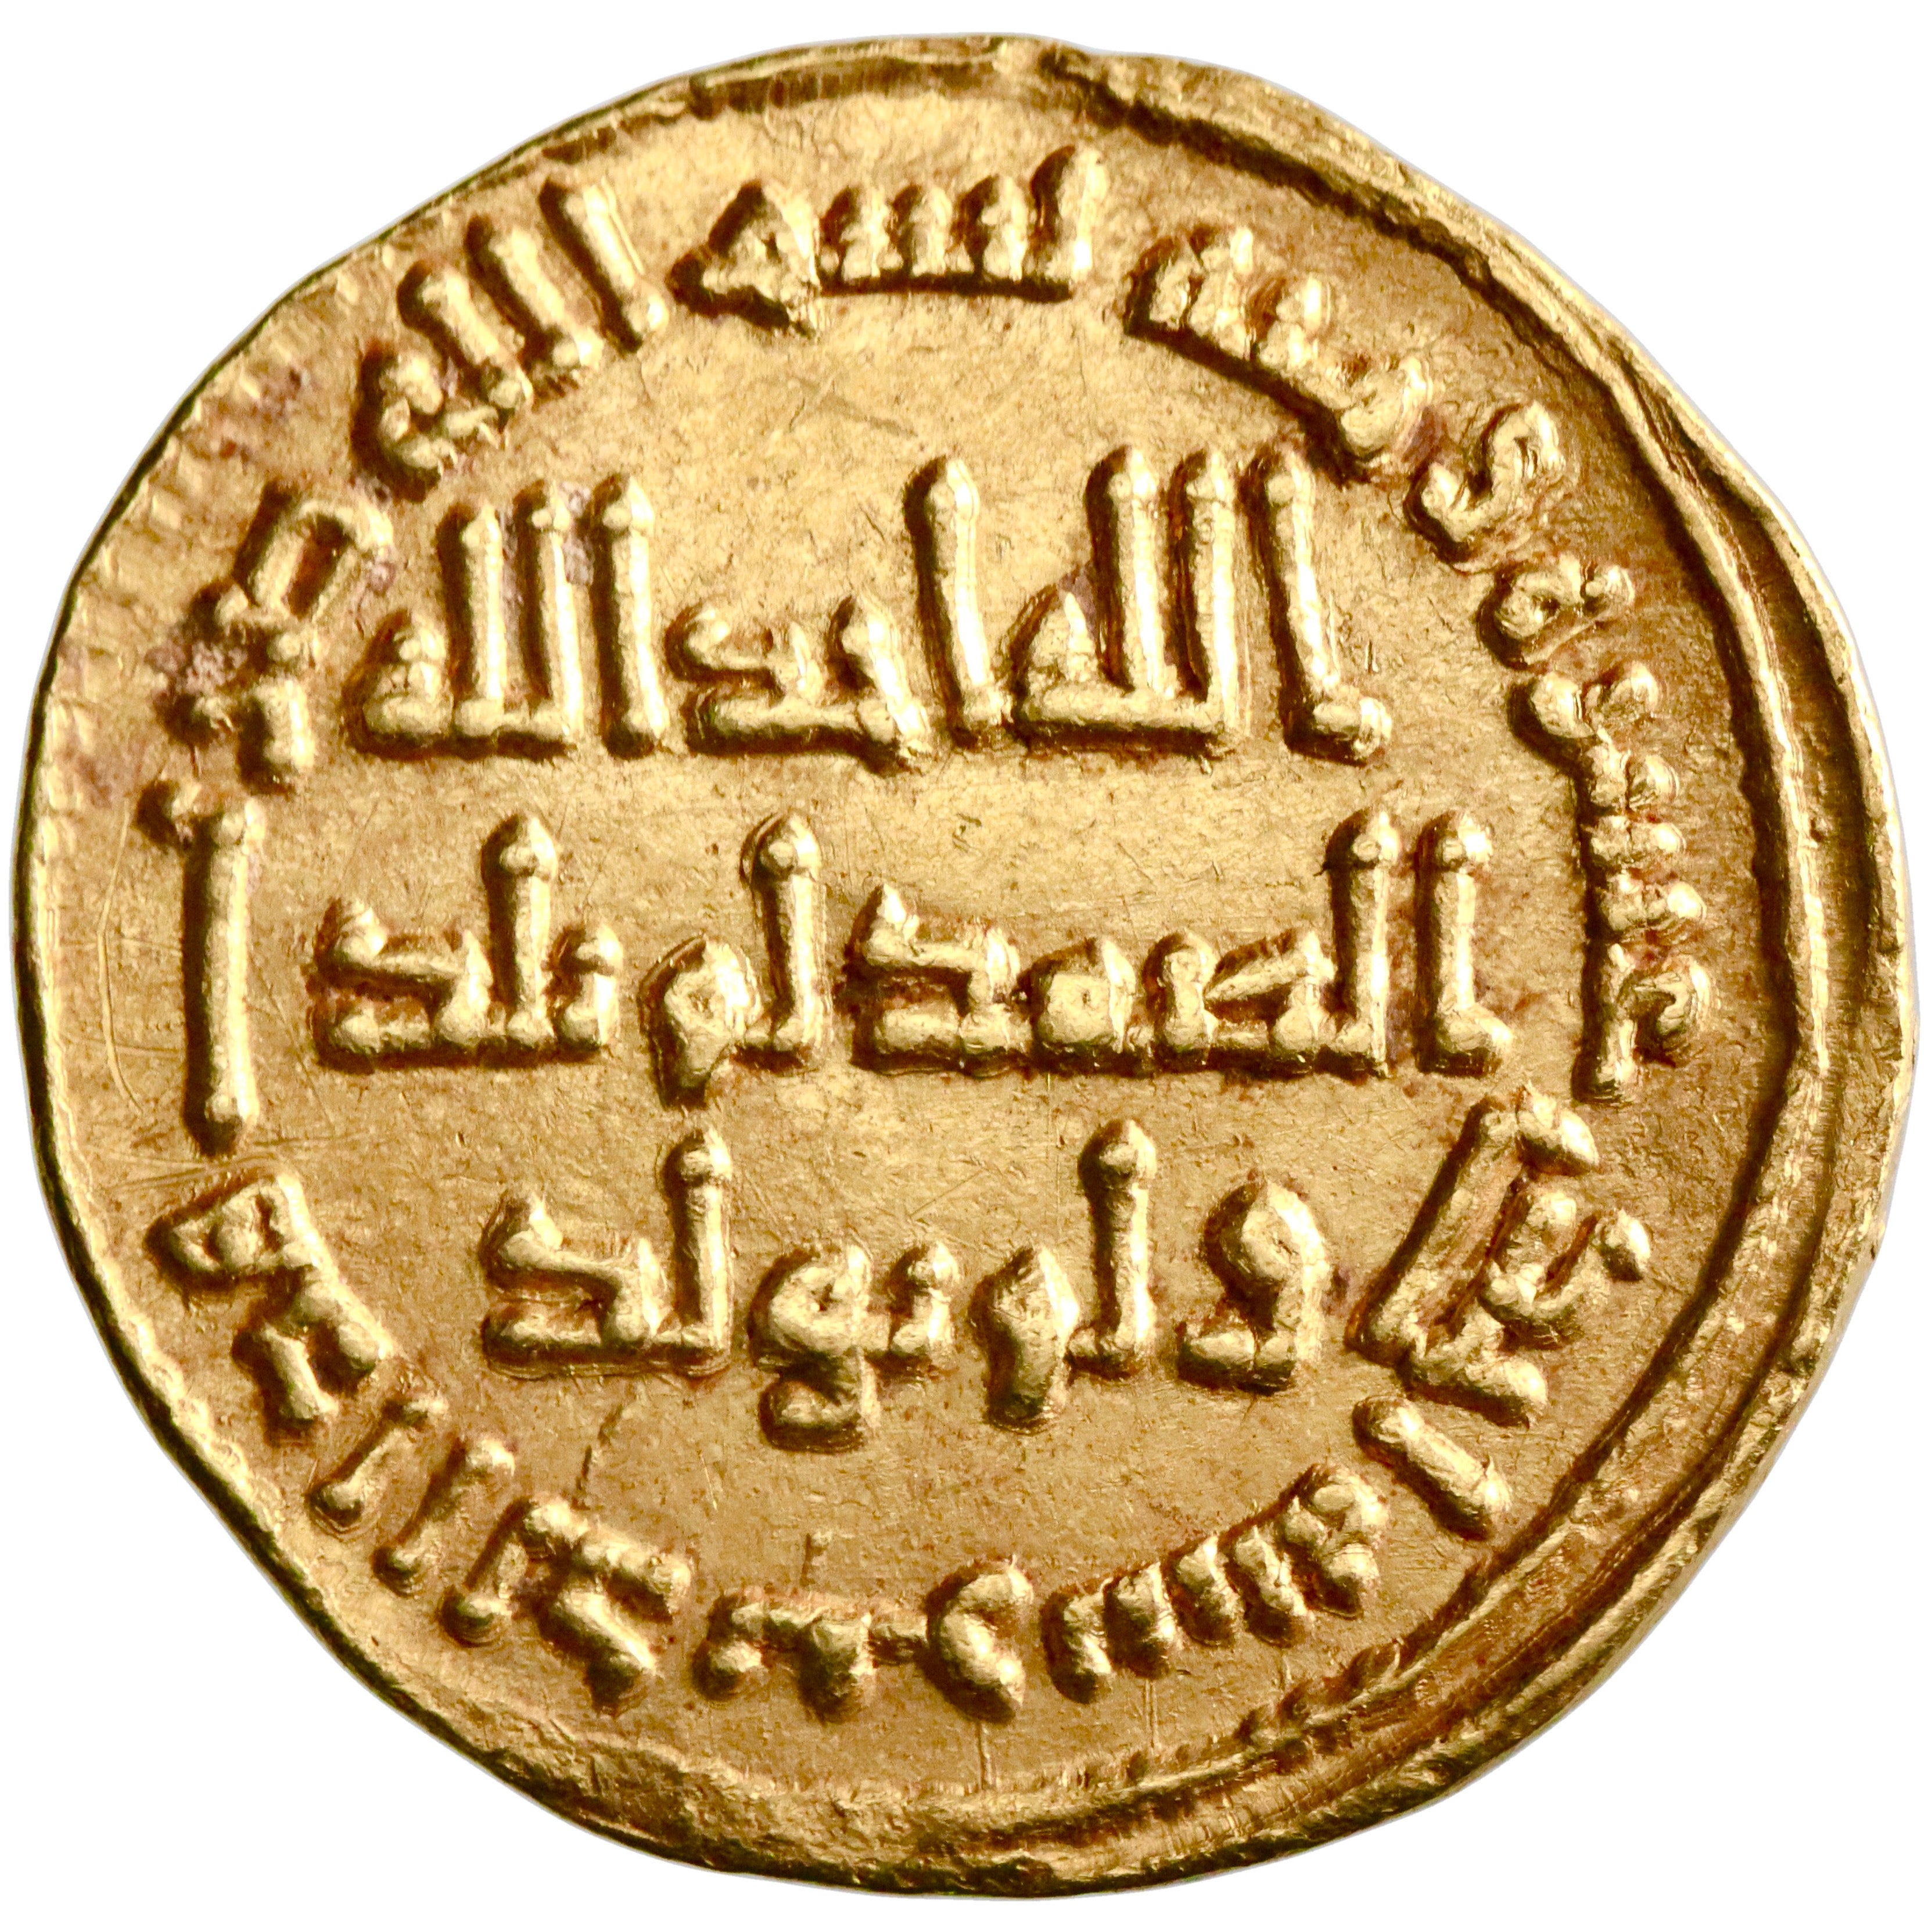 Umayyad, Hisham ibn 'Abd al-Malik, gold dinar, AH 111